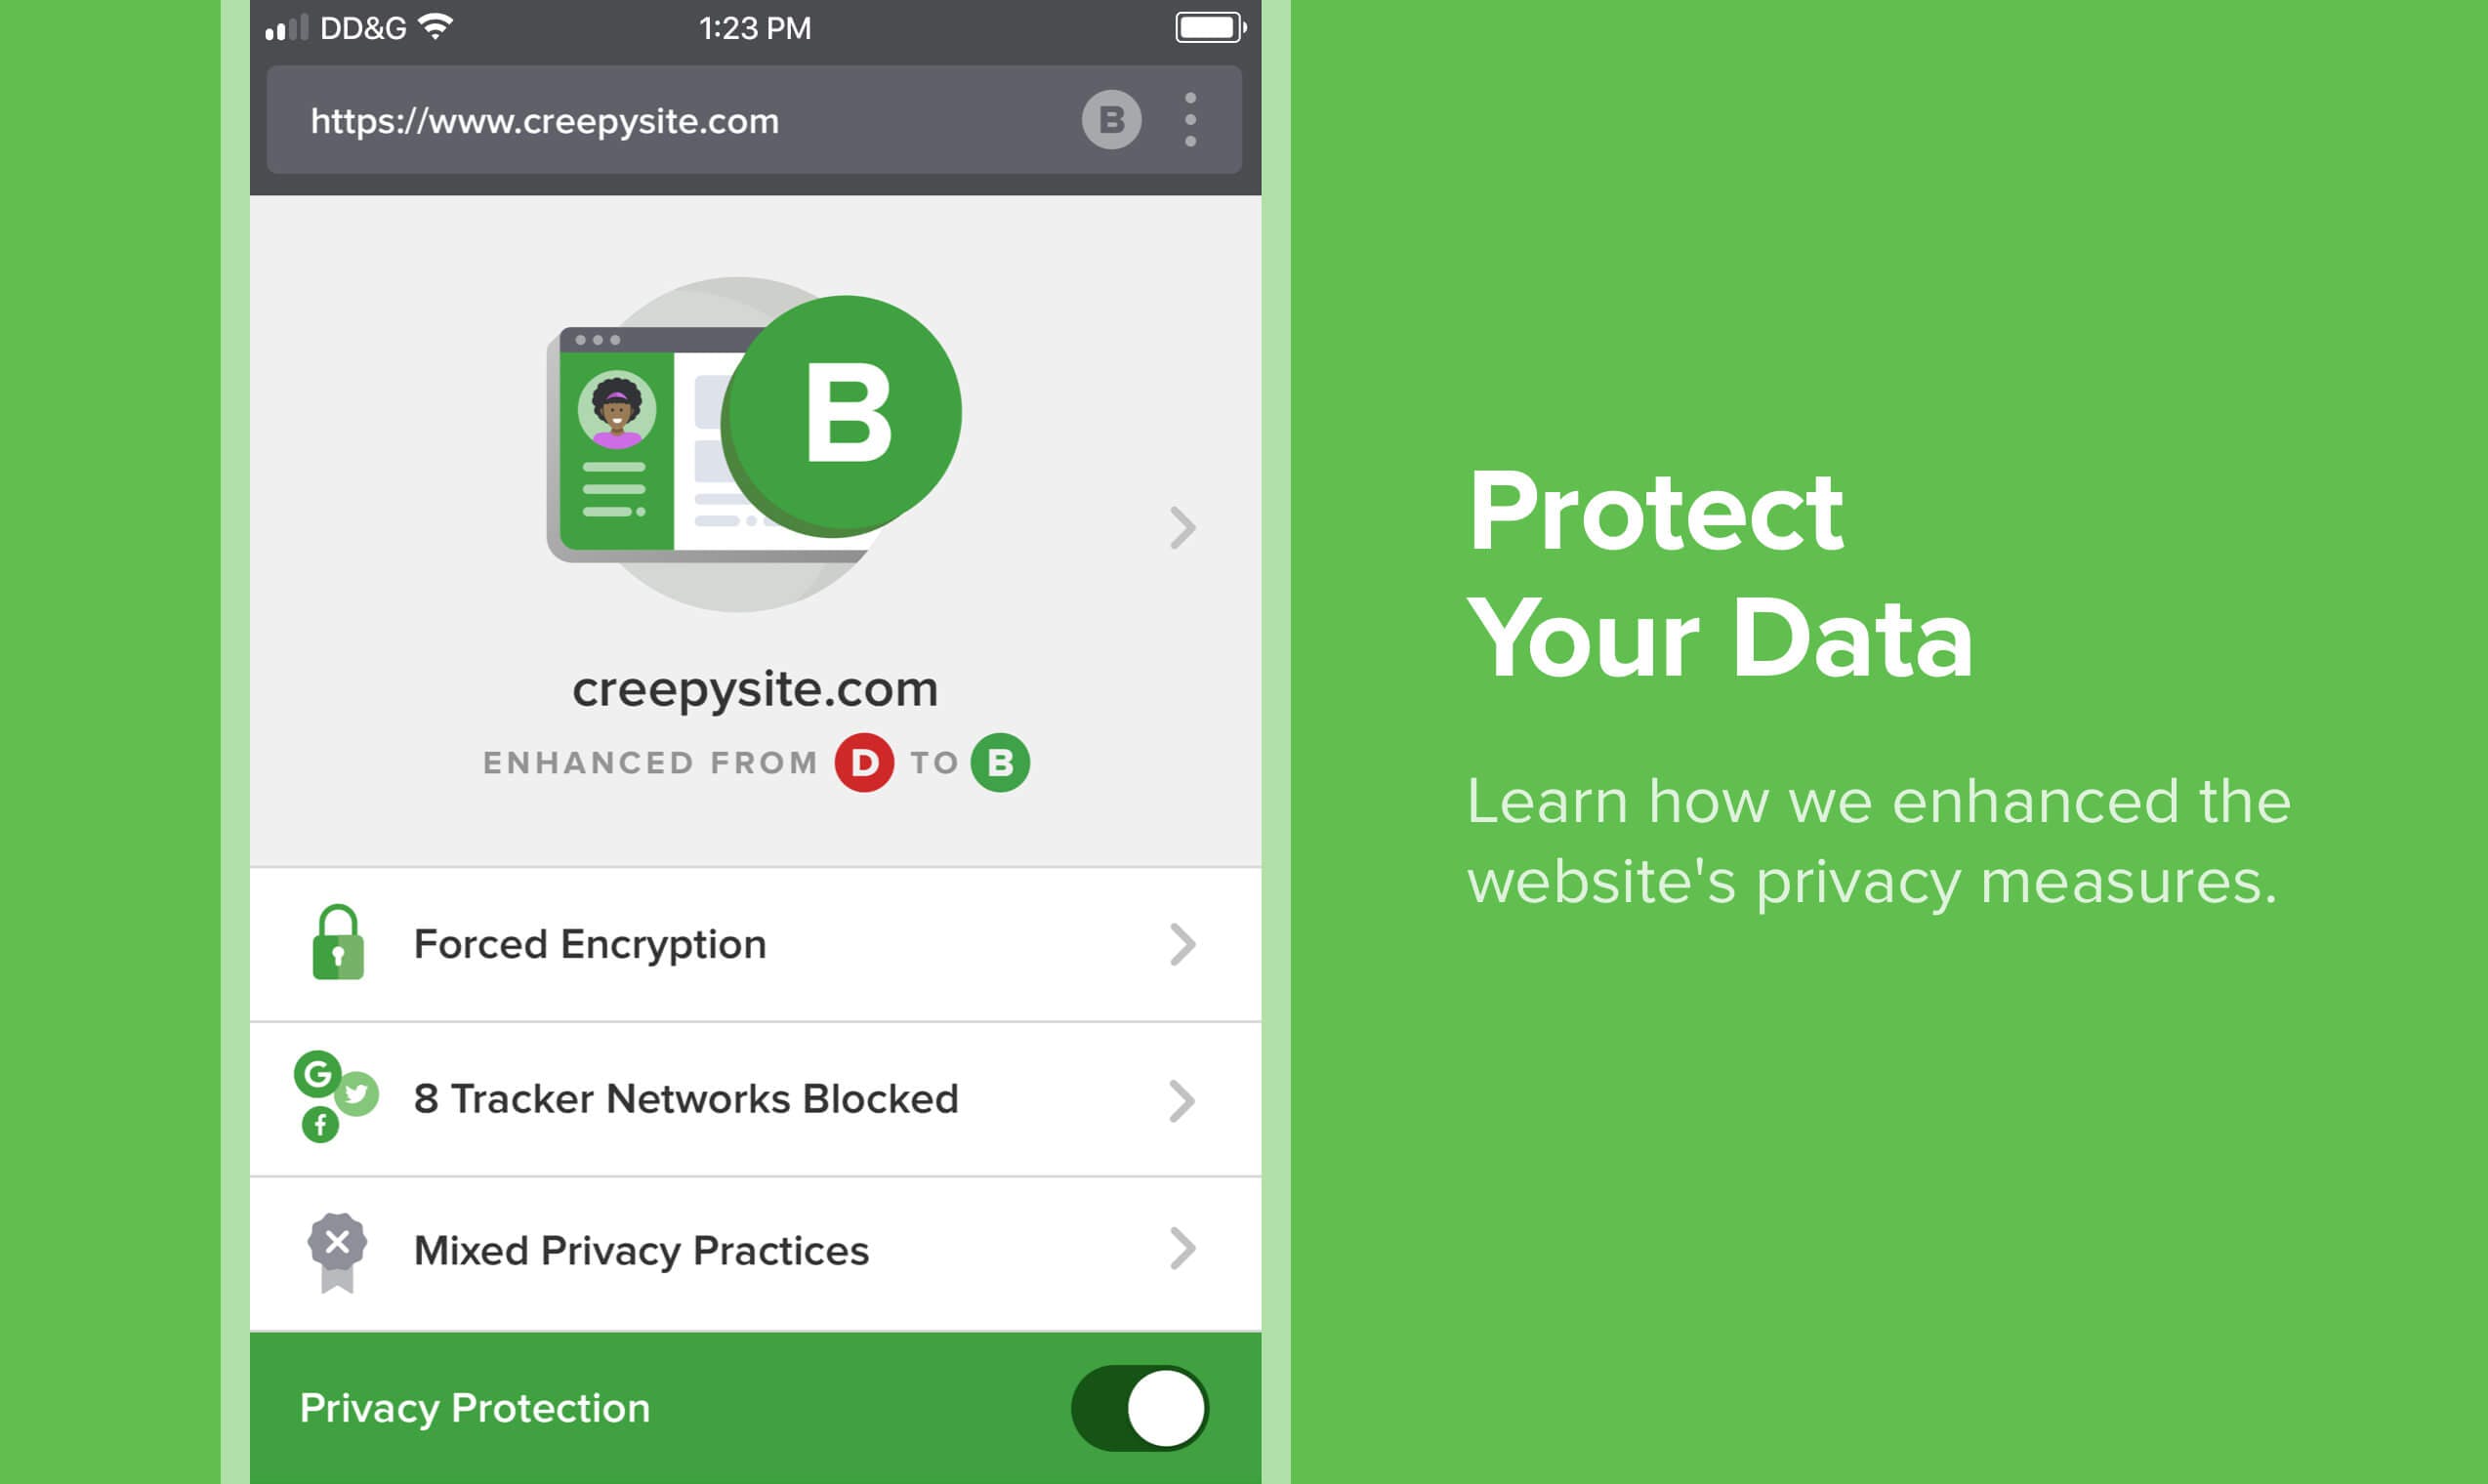 duckduckgo privacy app